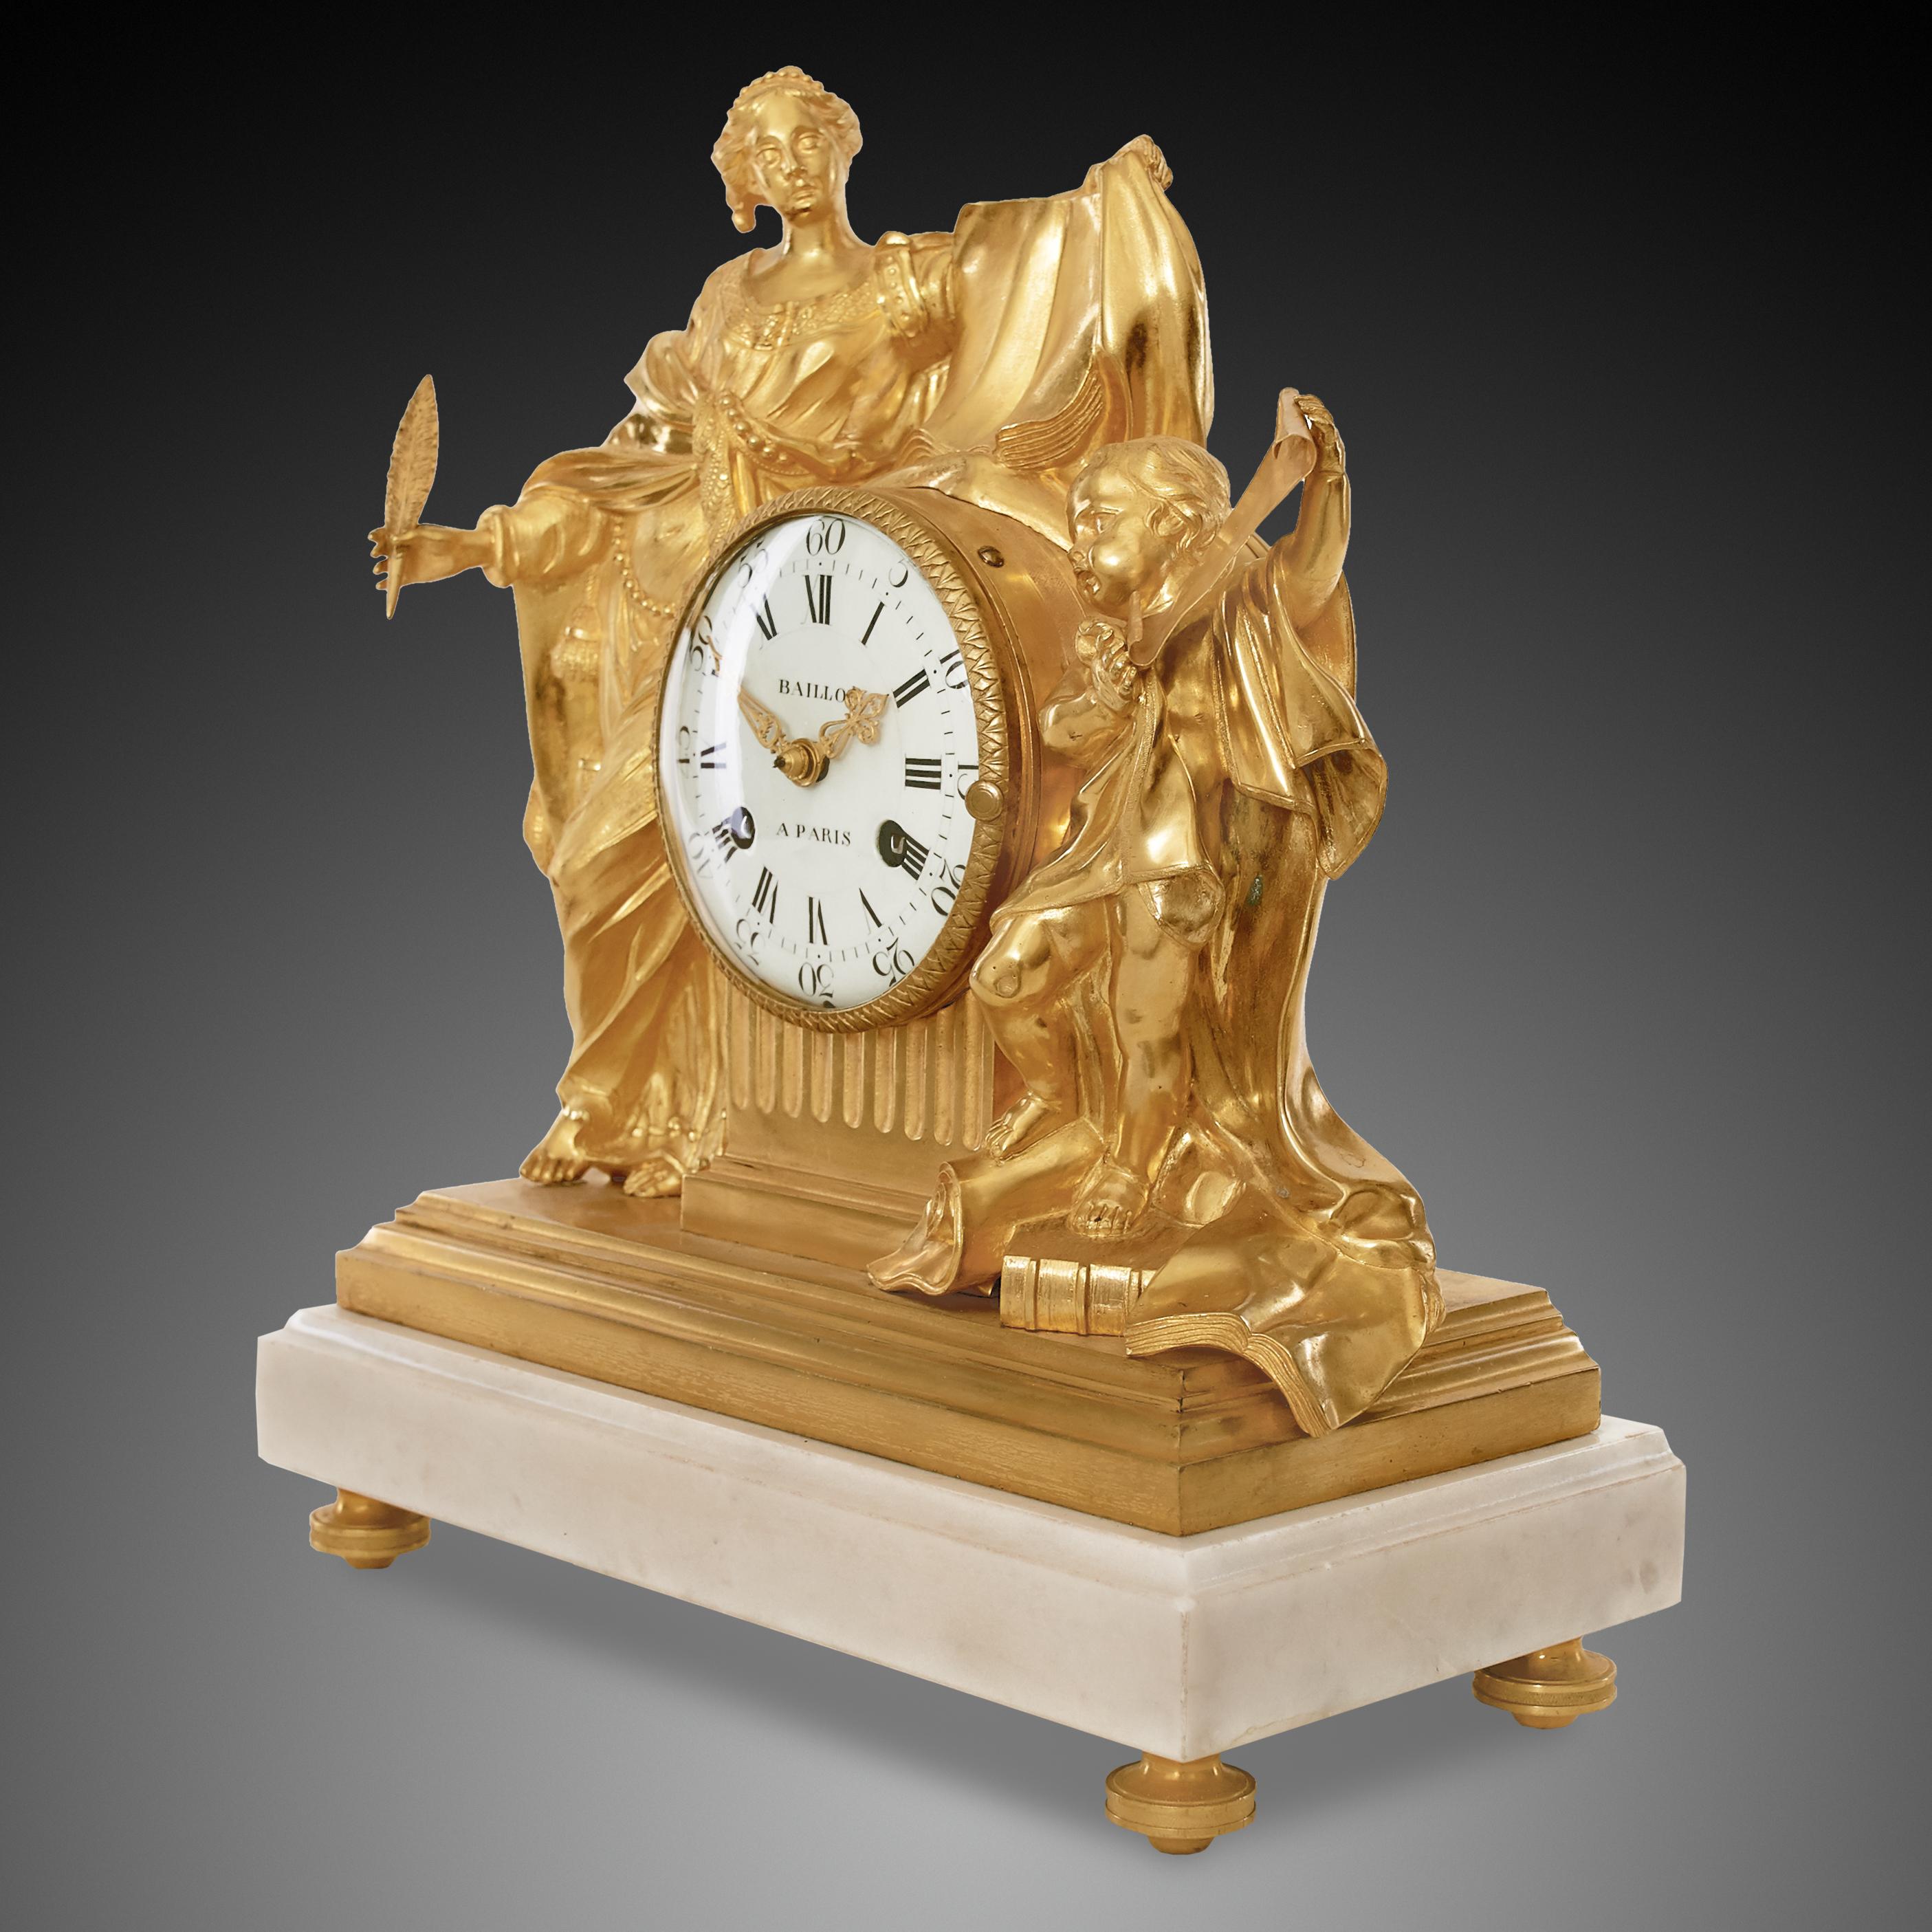 Diese Uhr wurde von Jean-Baptiste Baillon III hergestellt, einem der geschicktesten und innovativsten Uhrmacher seiner Zeit. Er belieferte die illustre Kundschaft, nicht zuletzt die französische und spanische Königsfamilie sowie angesehene